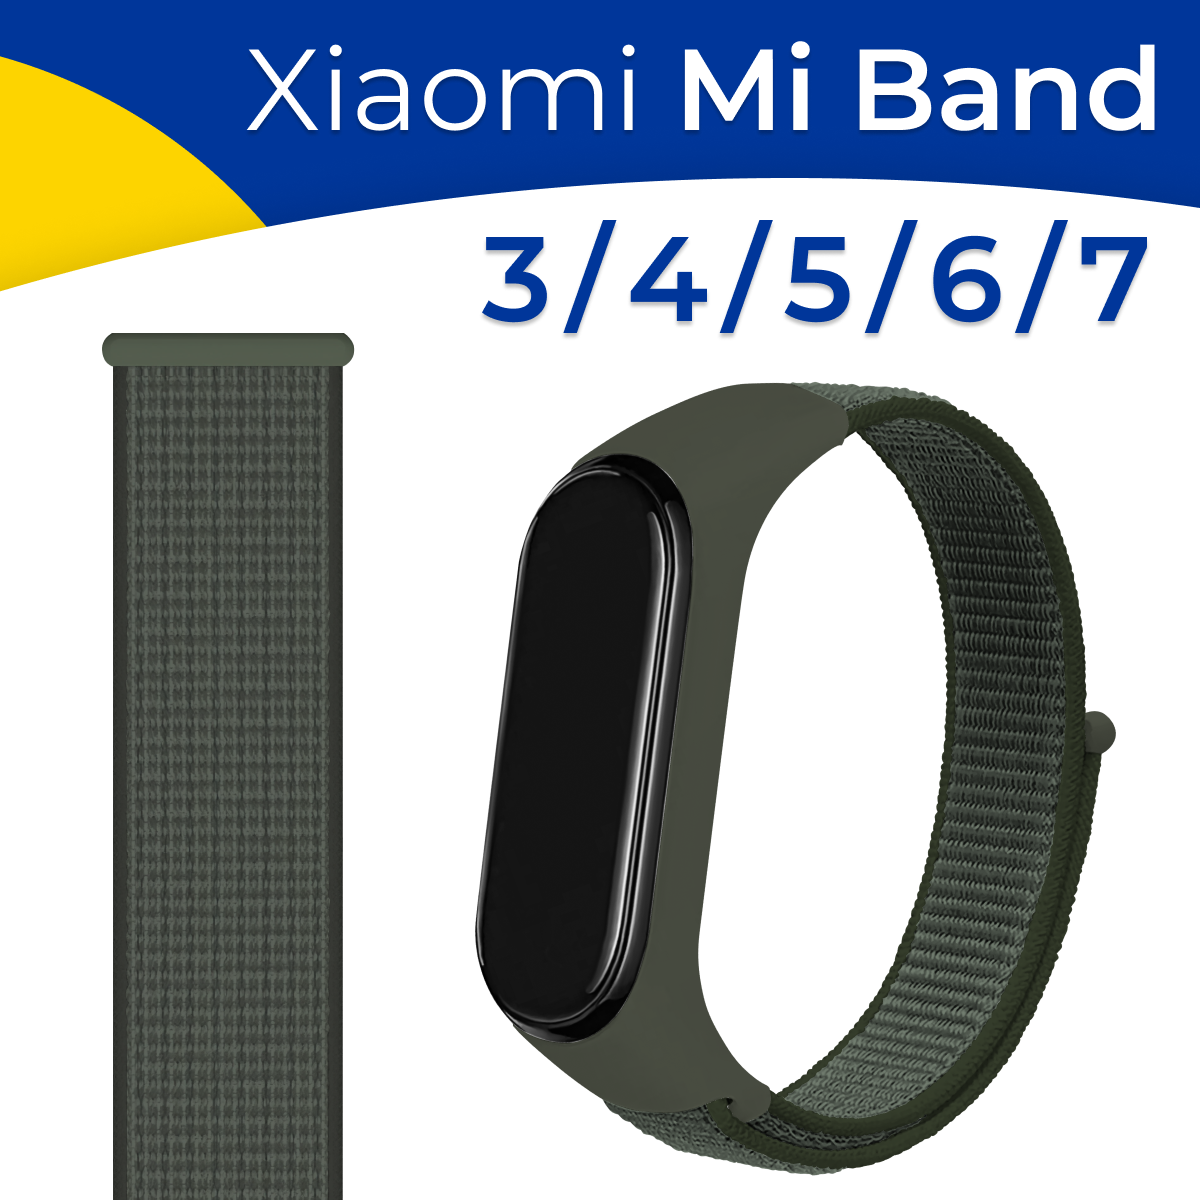 Нейлоновый ремешок для фитнес-трекера Xiaomi Mi Band 3, 4, 5, 6 и 7 / Тканевый сменный браслет для смарт часов Сяоми Ми Бэнд 3, 4, 5, 6 и 7 / Хаки